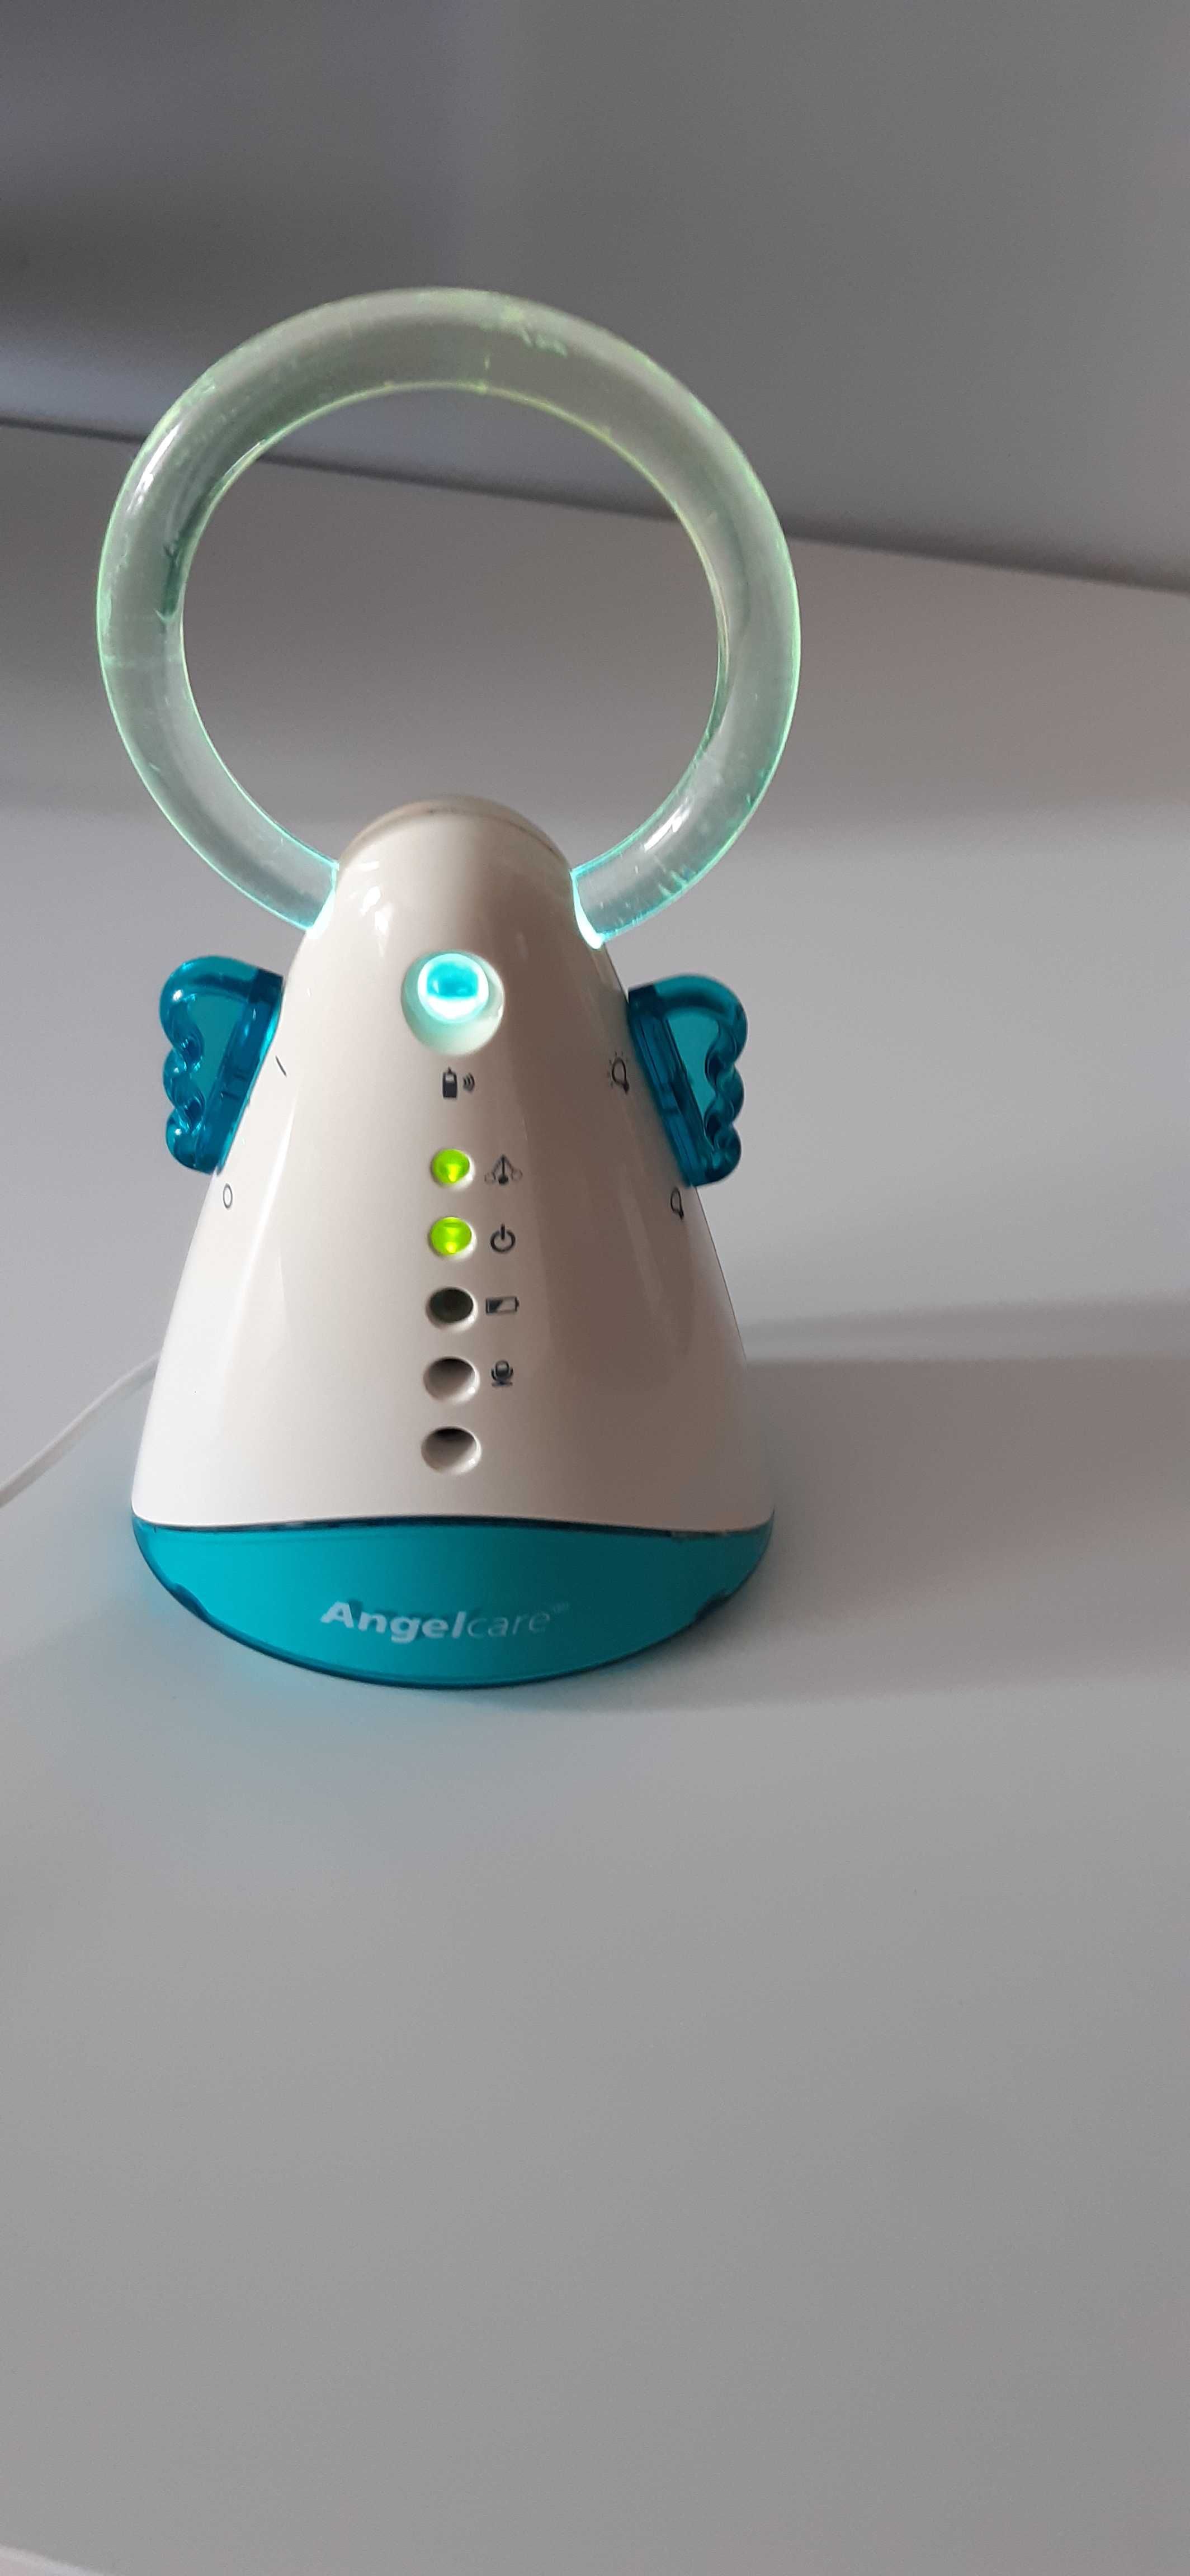 Angelcare AC 401 monitor oddechu z nianią stan bardzo dobry.